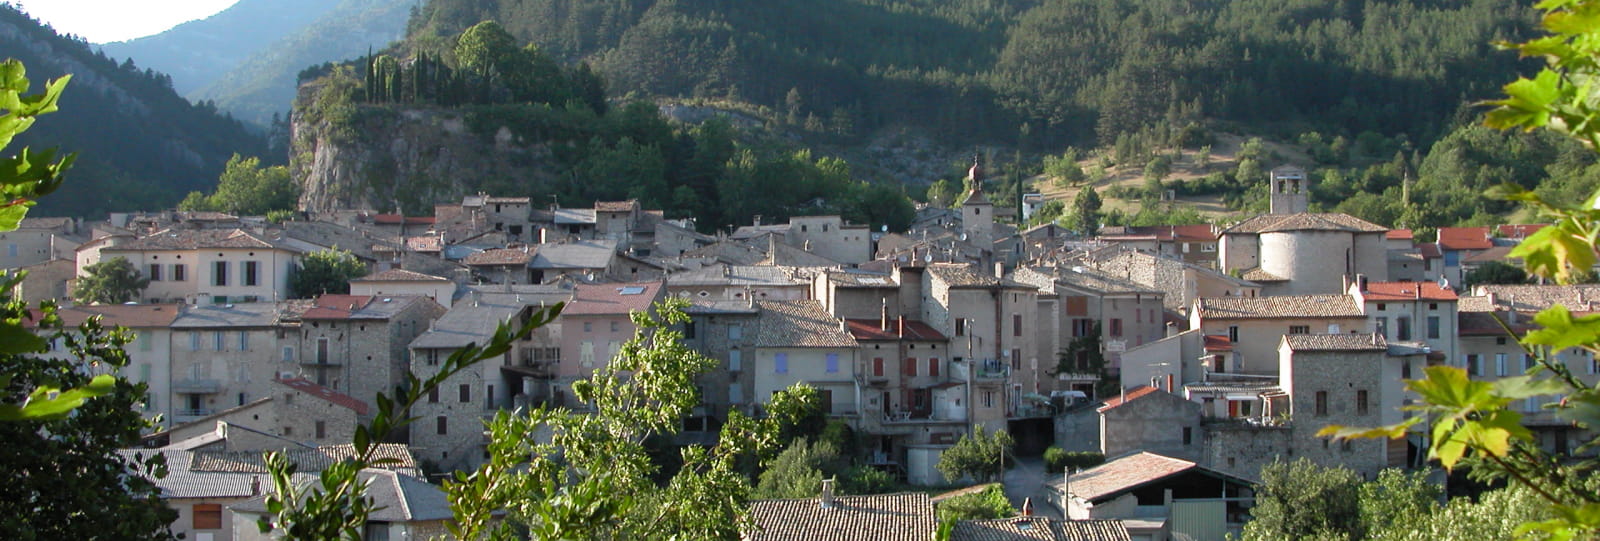 Village médiéval de Châtillon-en-Diois